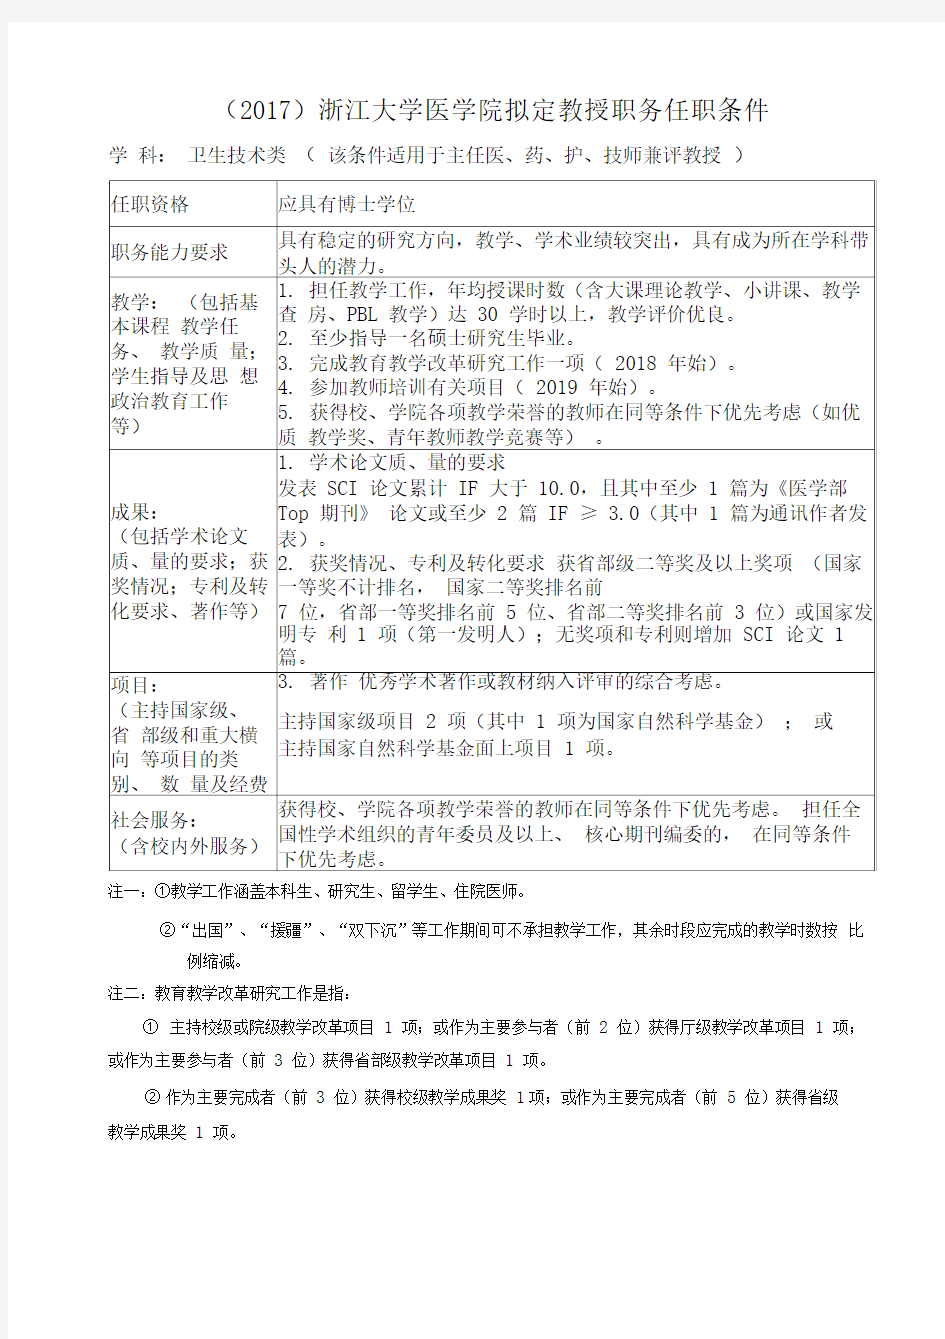 (2017)浙江大学医学院拟定教授职务任职条件